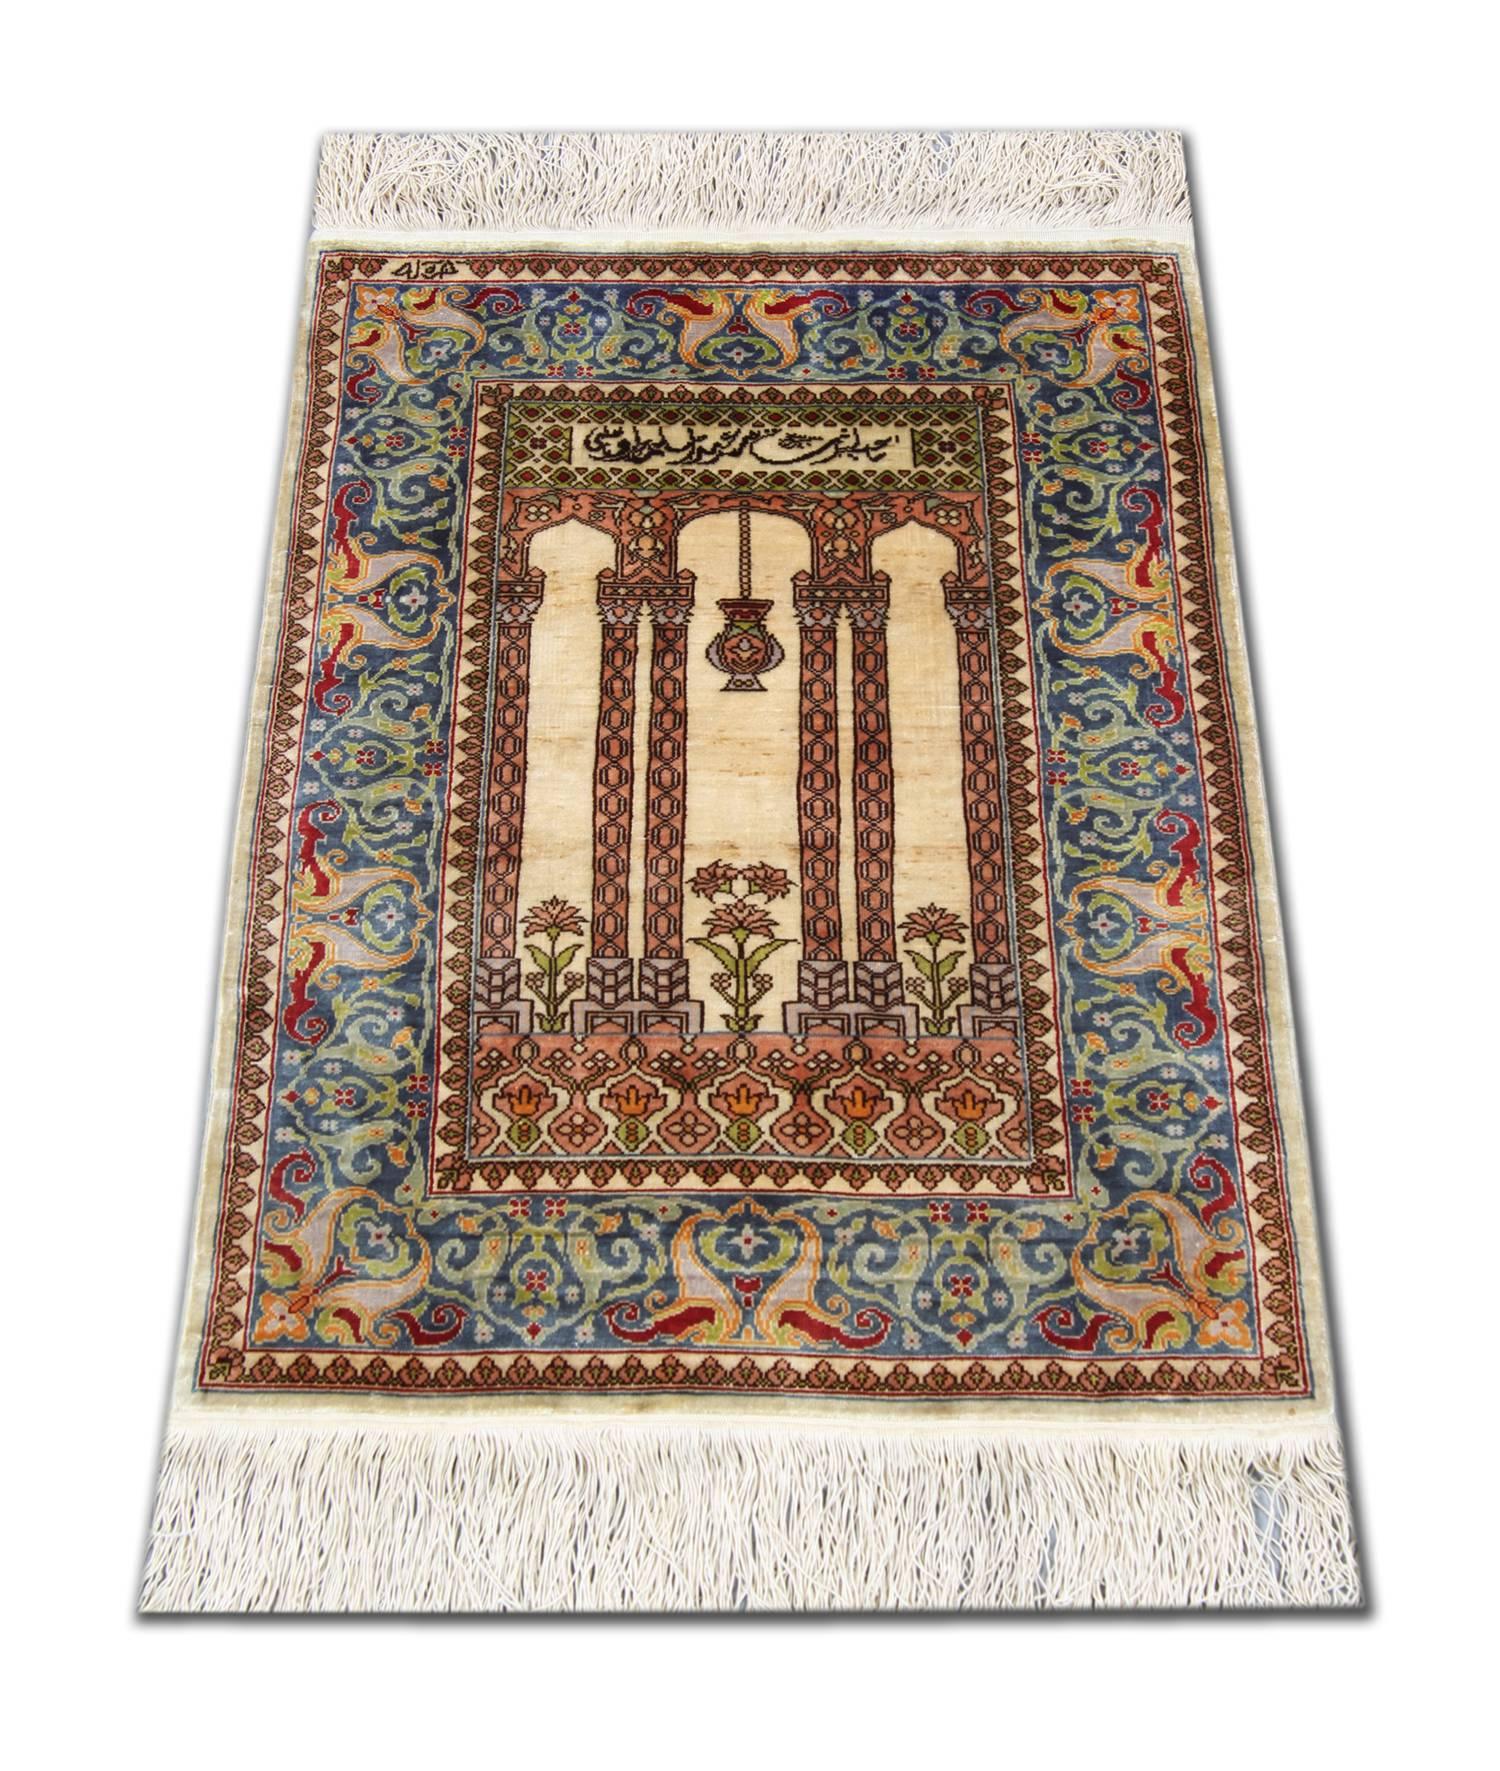 Un ancien tapis turc tissé en soie Hereke, vers 1970. Ces tapis raffinés fabriqués à la main présentent des poils courts en soie lustrée avec un motif d'arbre de vie à une extrémité du champ central ivoire, de belles têtes de fleurs au centre et une